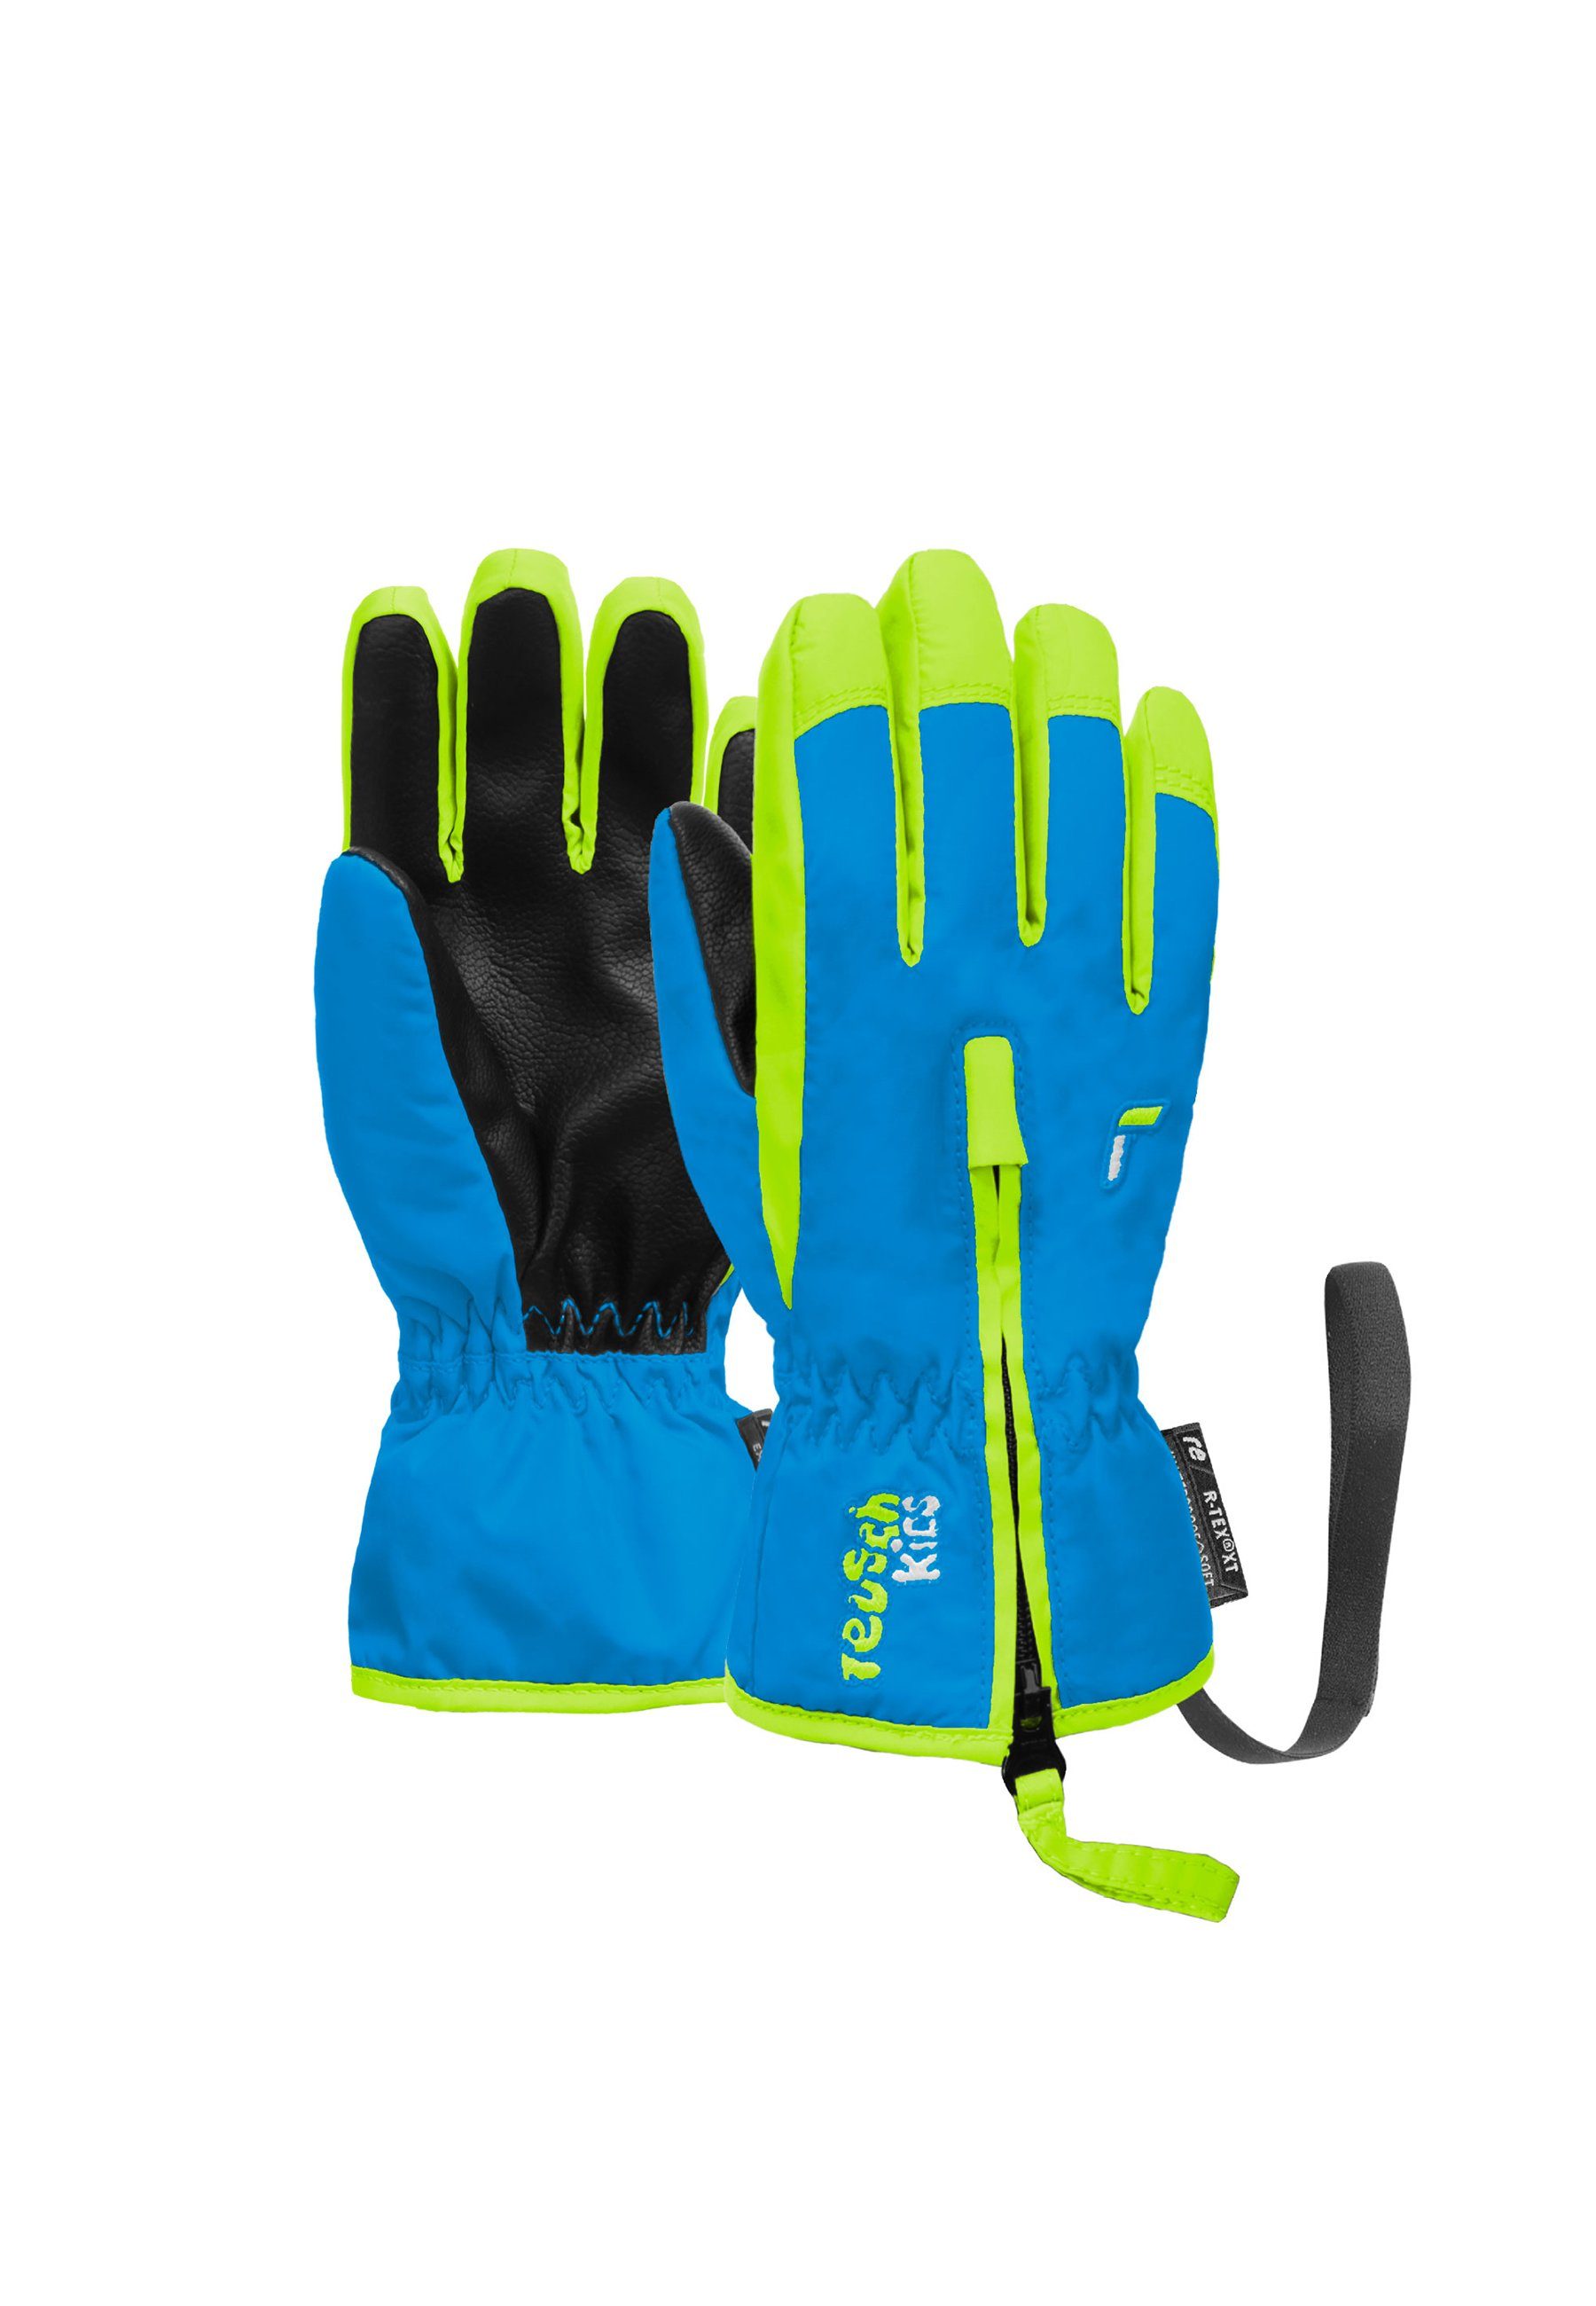 Reusch Skihandschuhe Ben mit praktischer Handgelenkschlaufe gelb-blau | Handschuhe